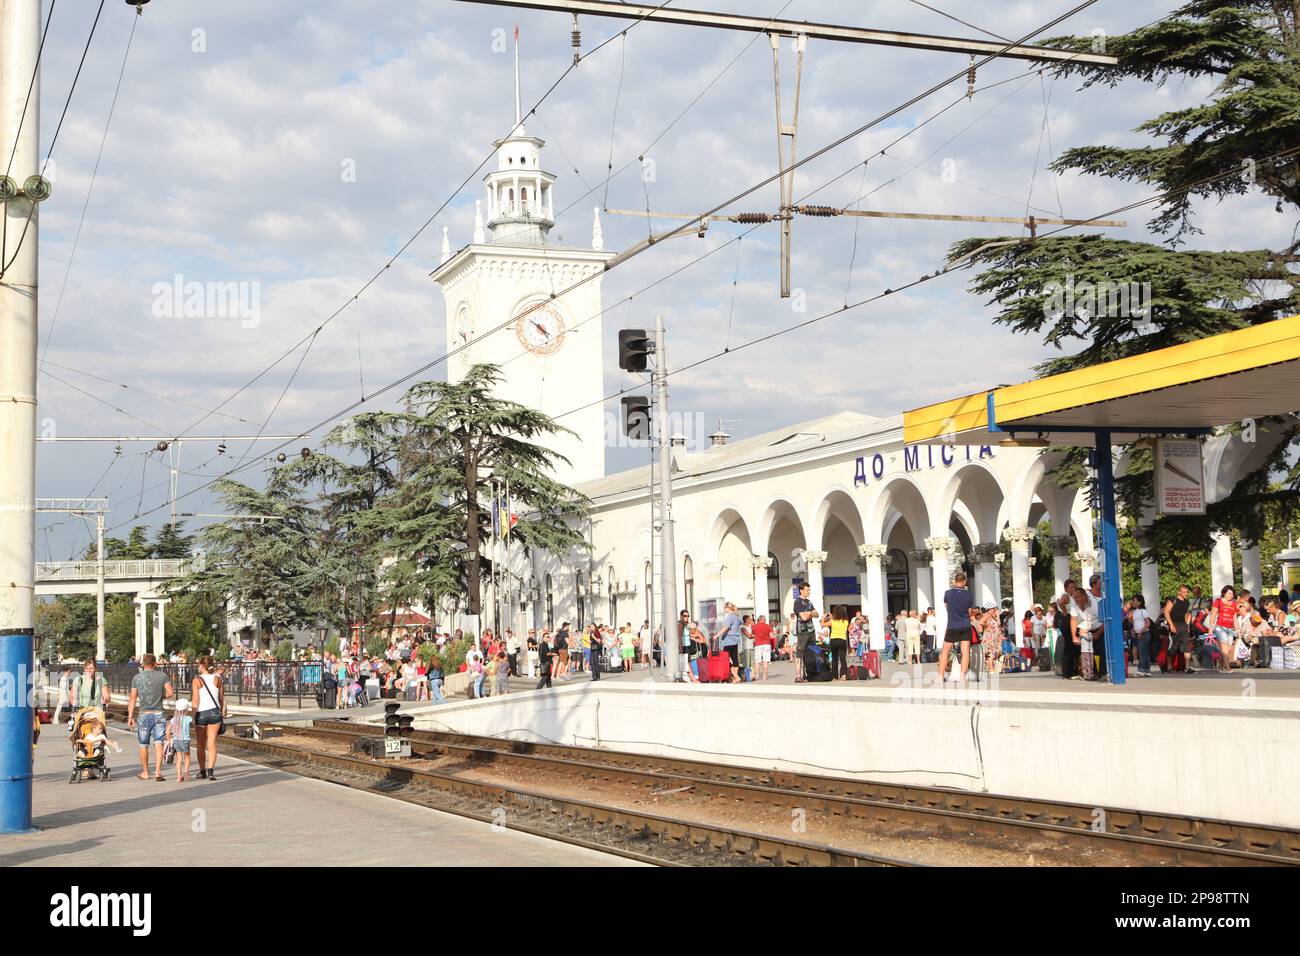 La gare de Simferopol, septembre 2013, est encore une saison touristique avec un certain nombre de passagers arrivant et quittant la Crimée Banque D'Images